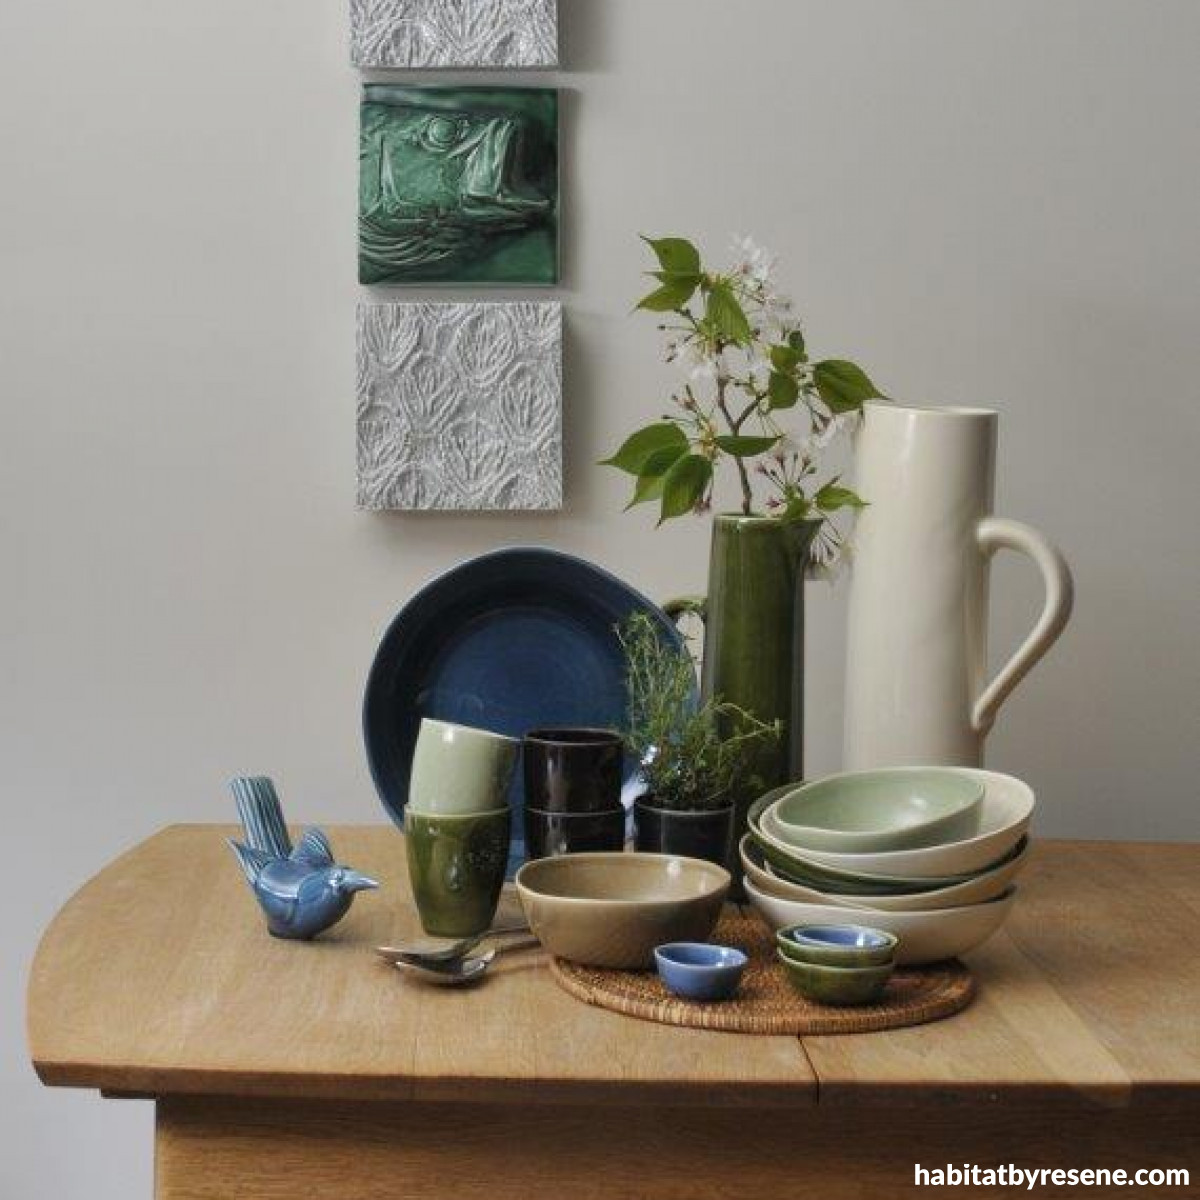 Ceramics to love forever | Habitat by Resene